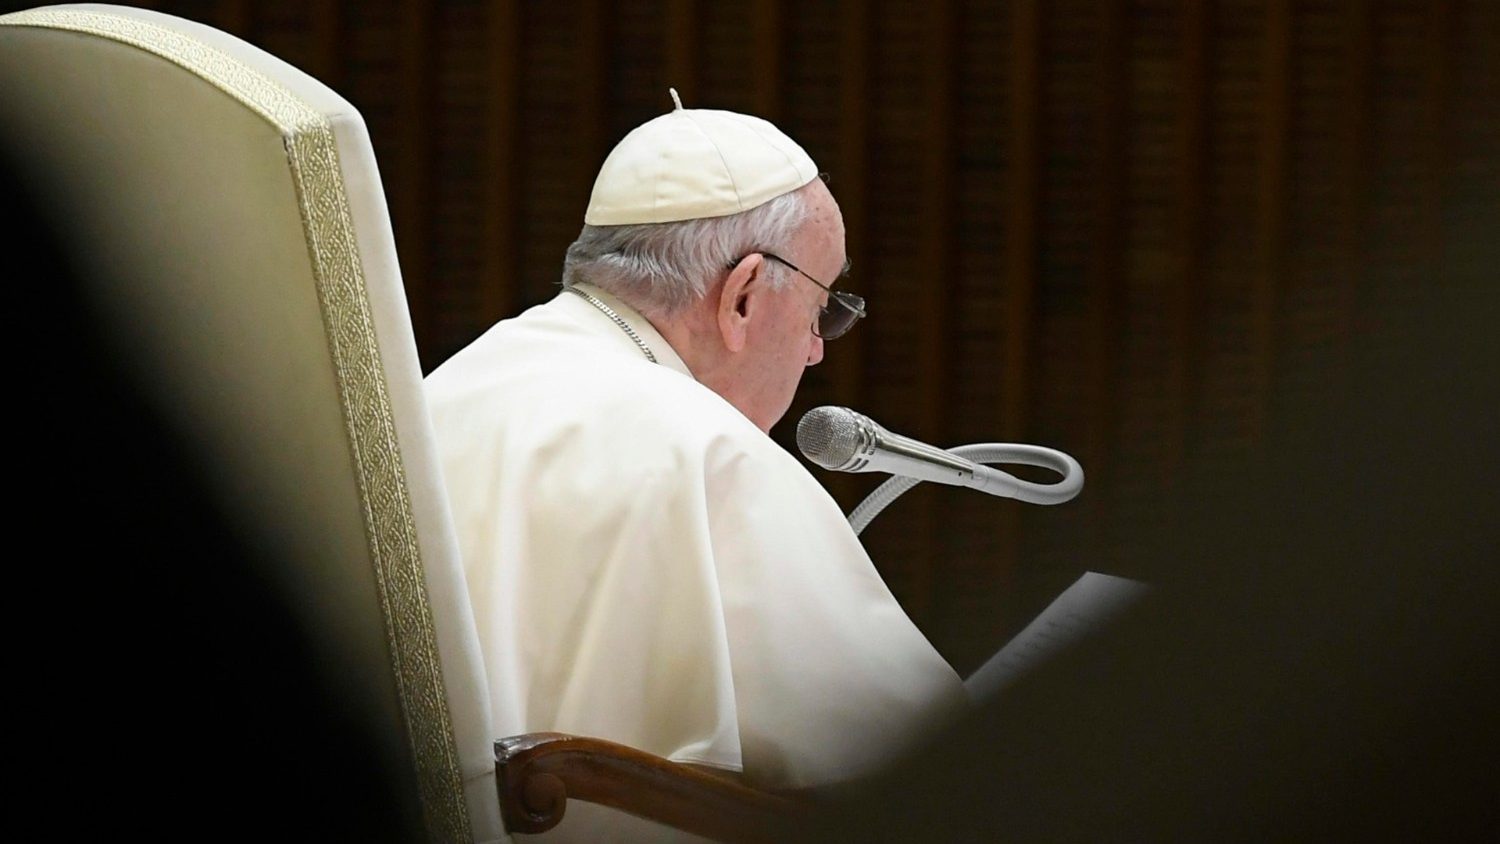 Папа: помолимся Господу, дабы Он принёс мир Украине как можно скорее